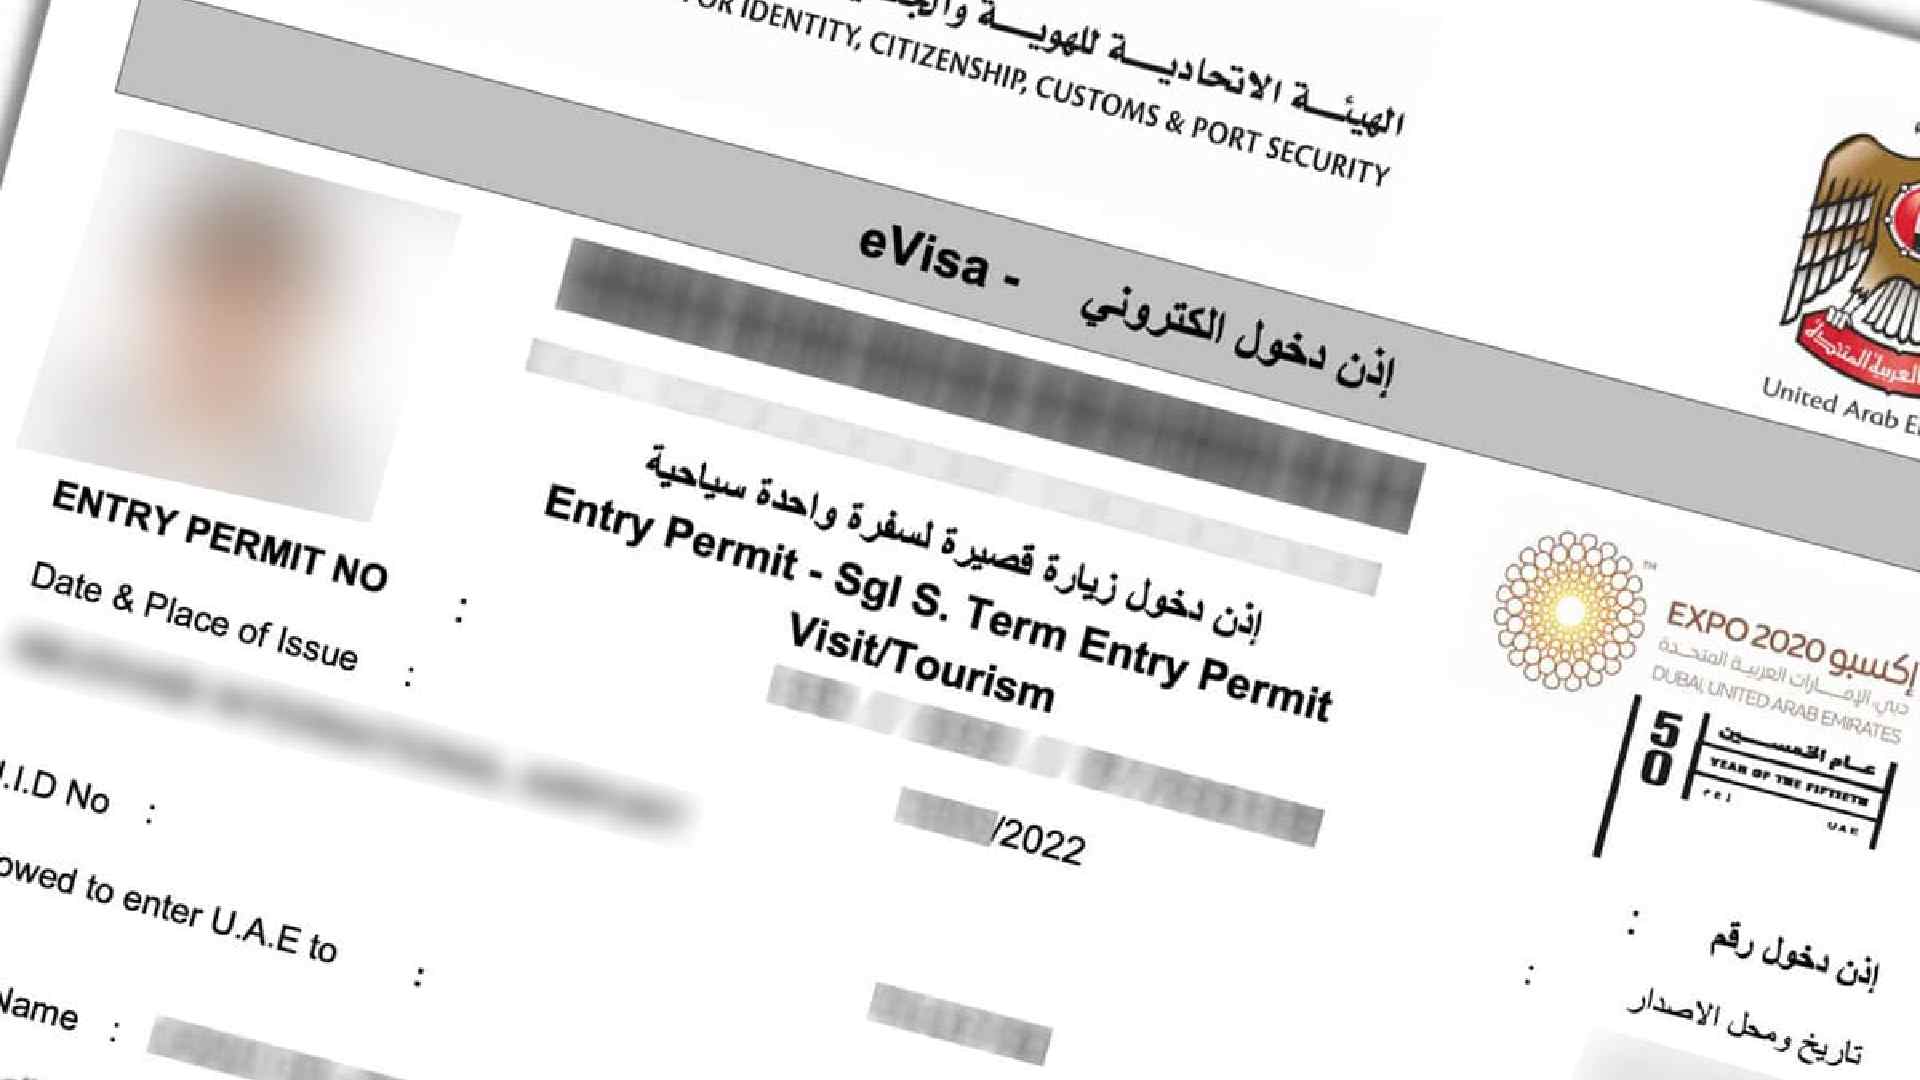 60 days visa uae